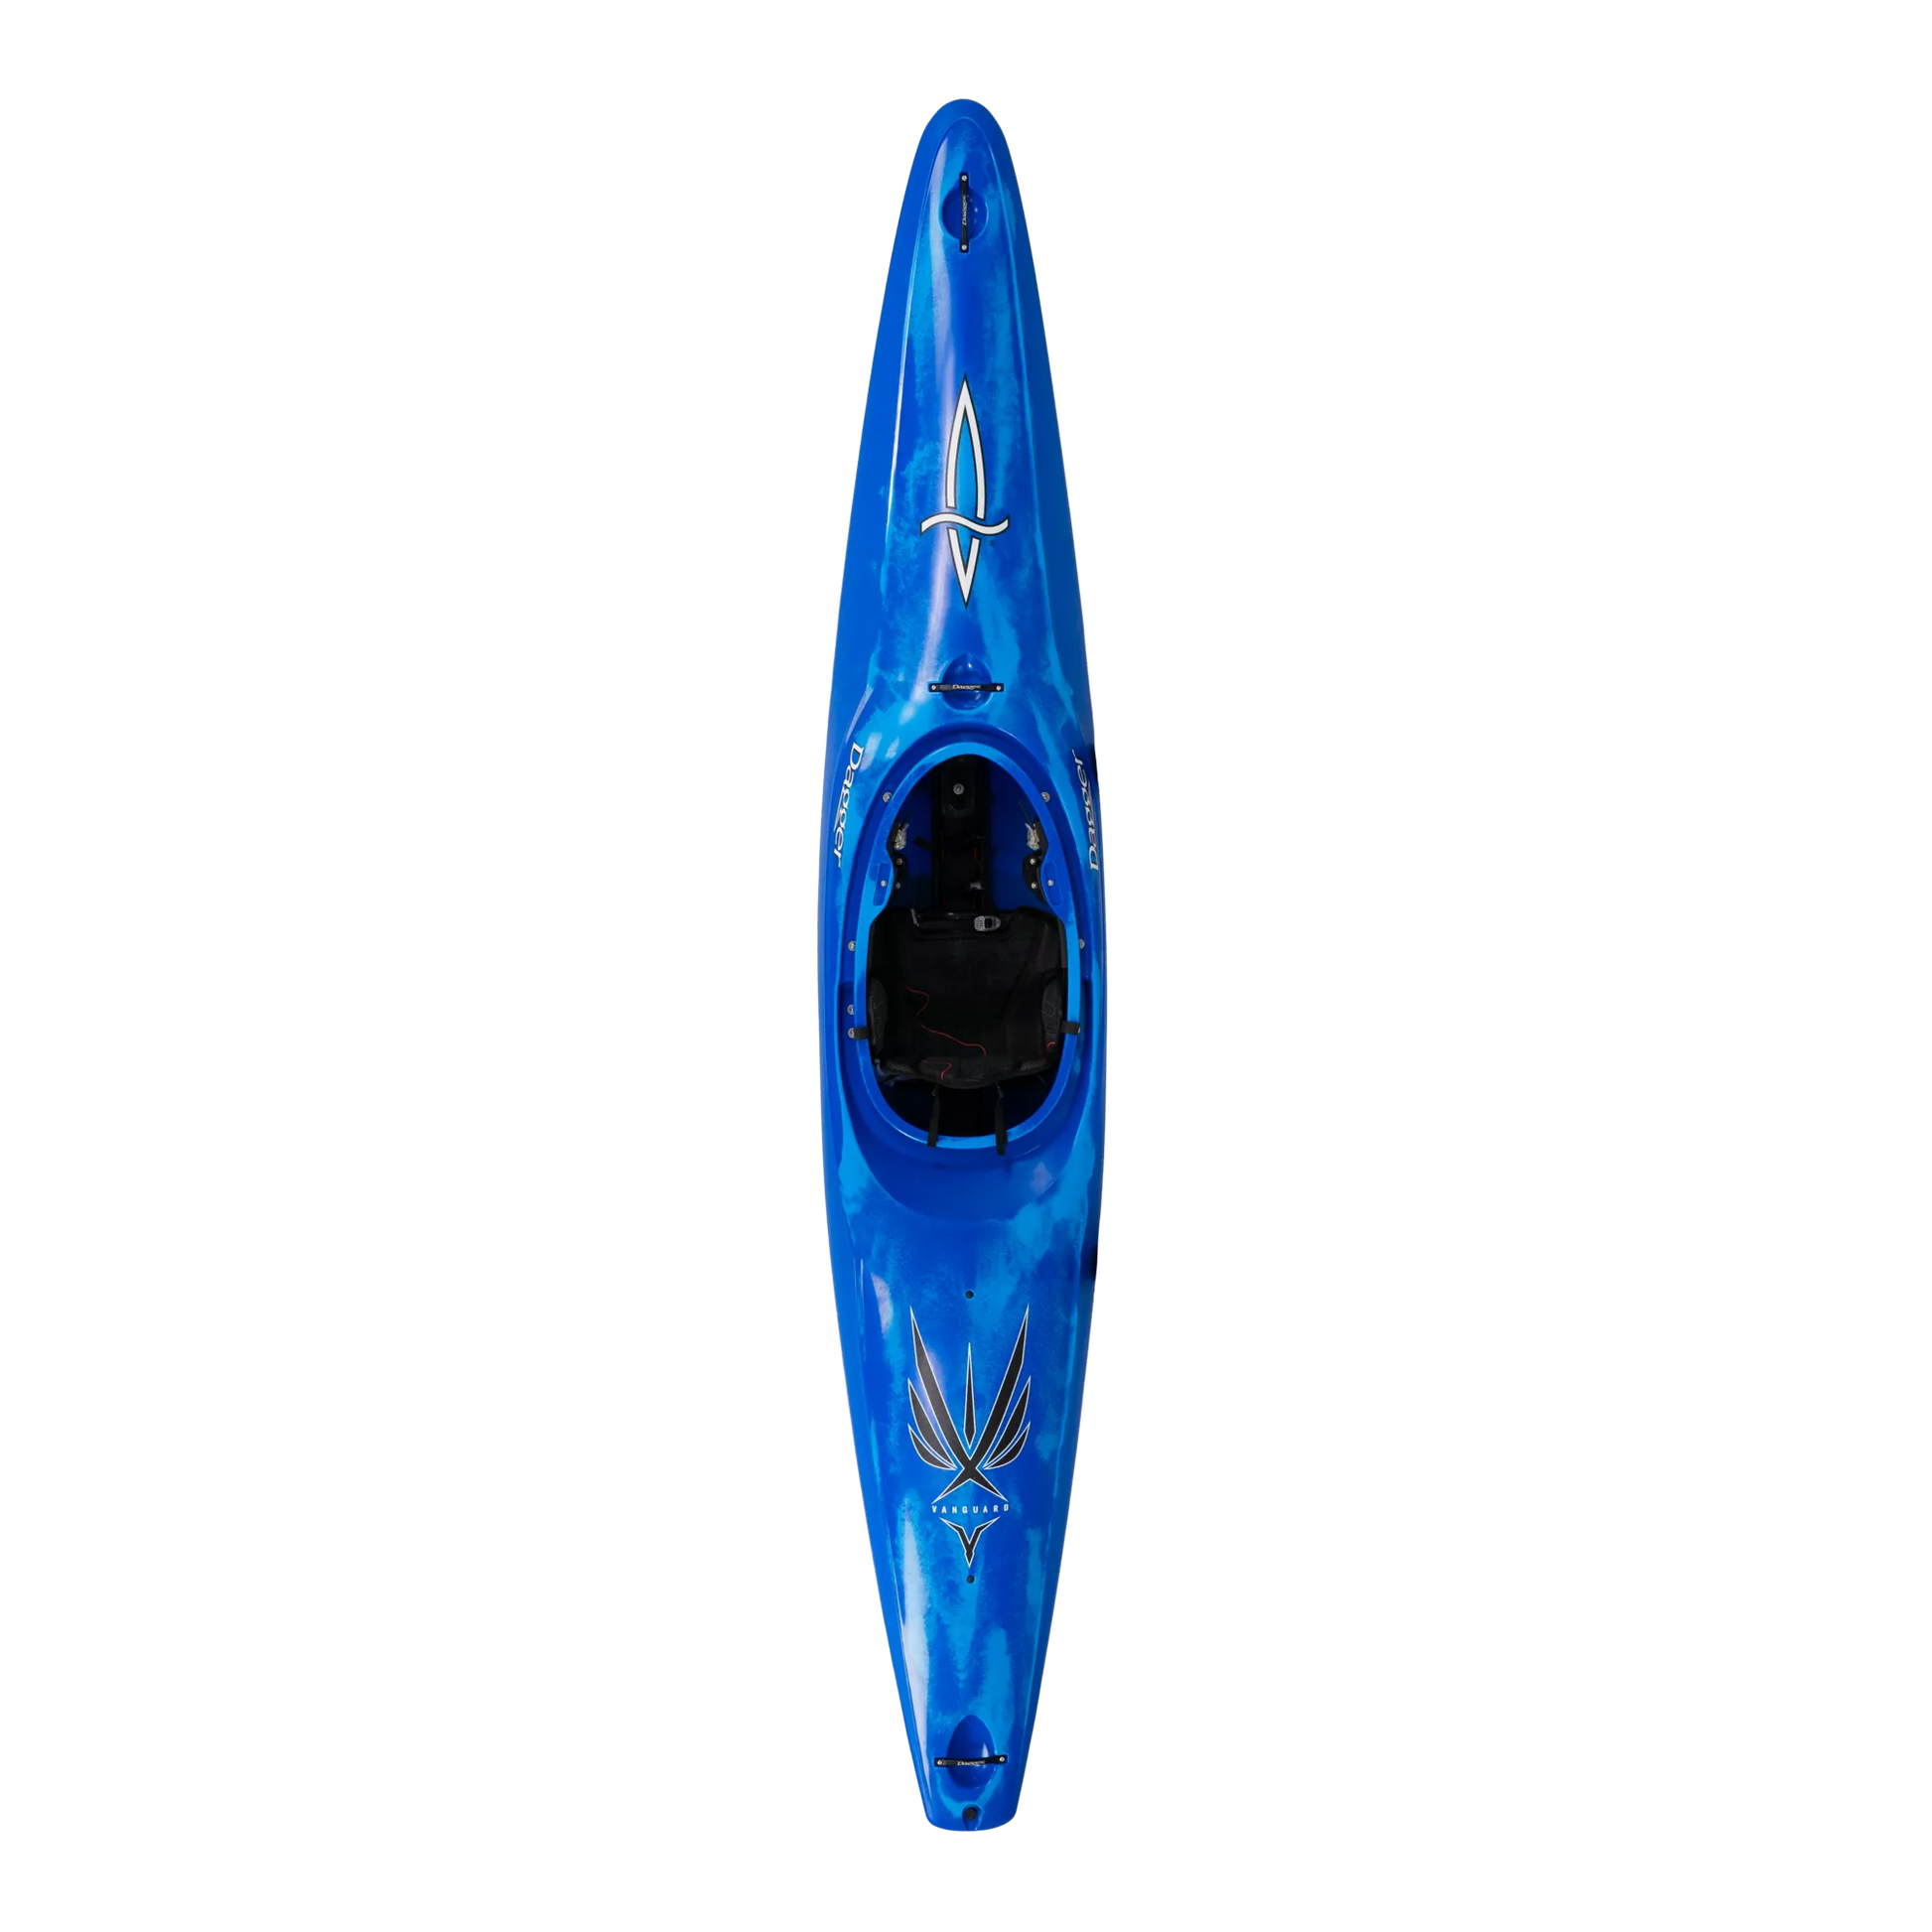 Blue Smoke Dagger Vanguard 12.0 river running, whitewater racing, long boat kayak.